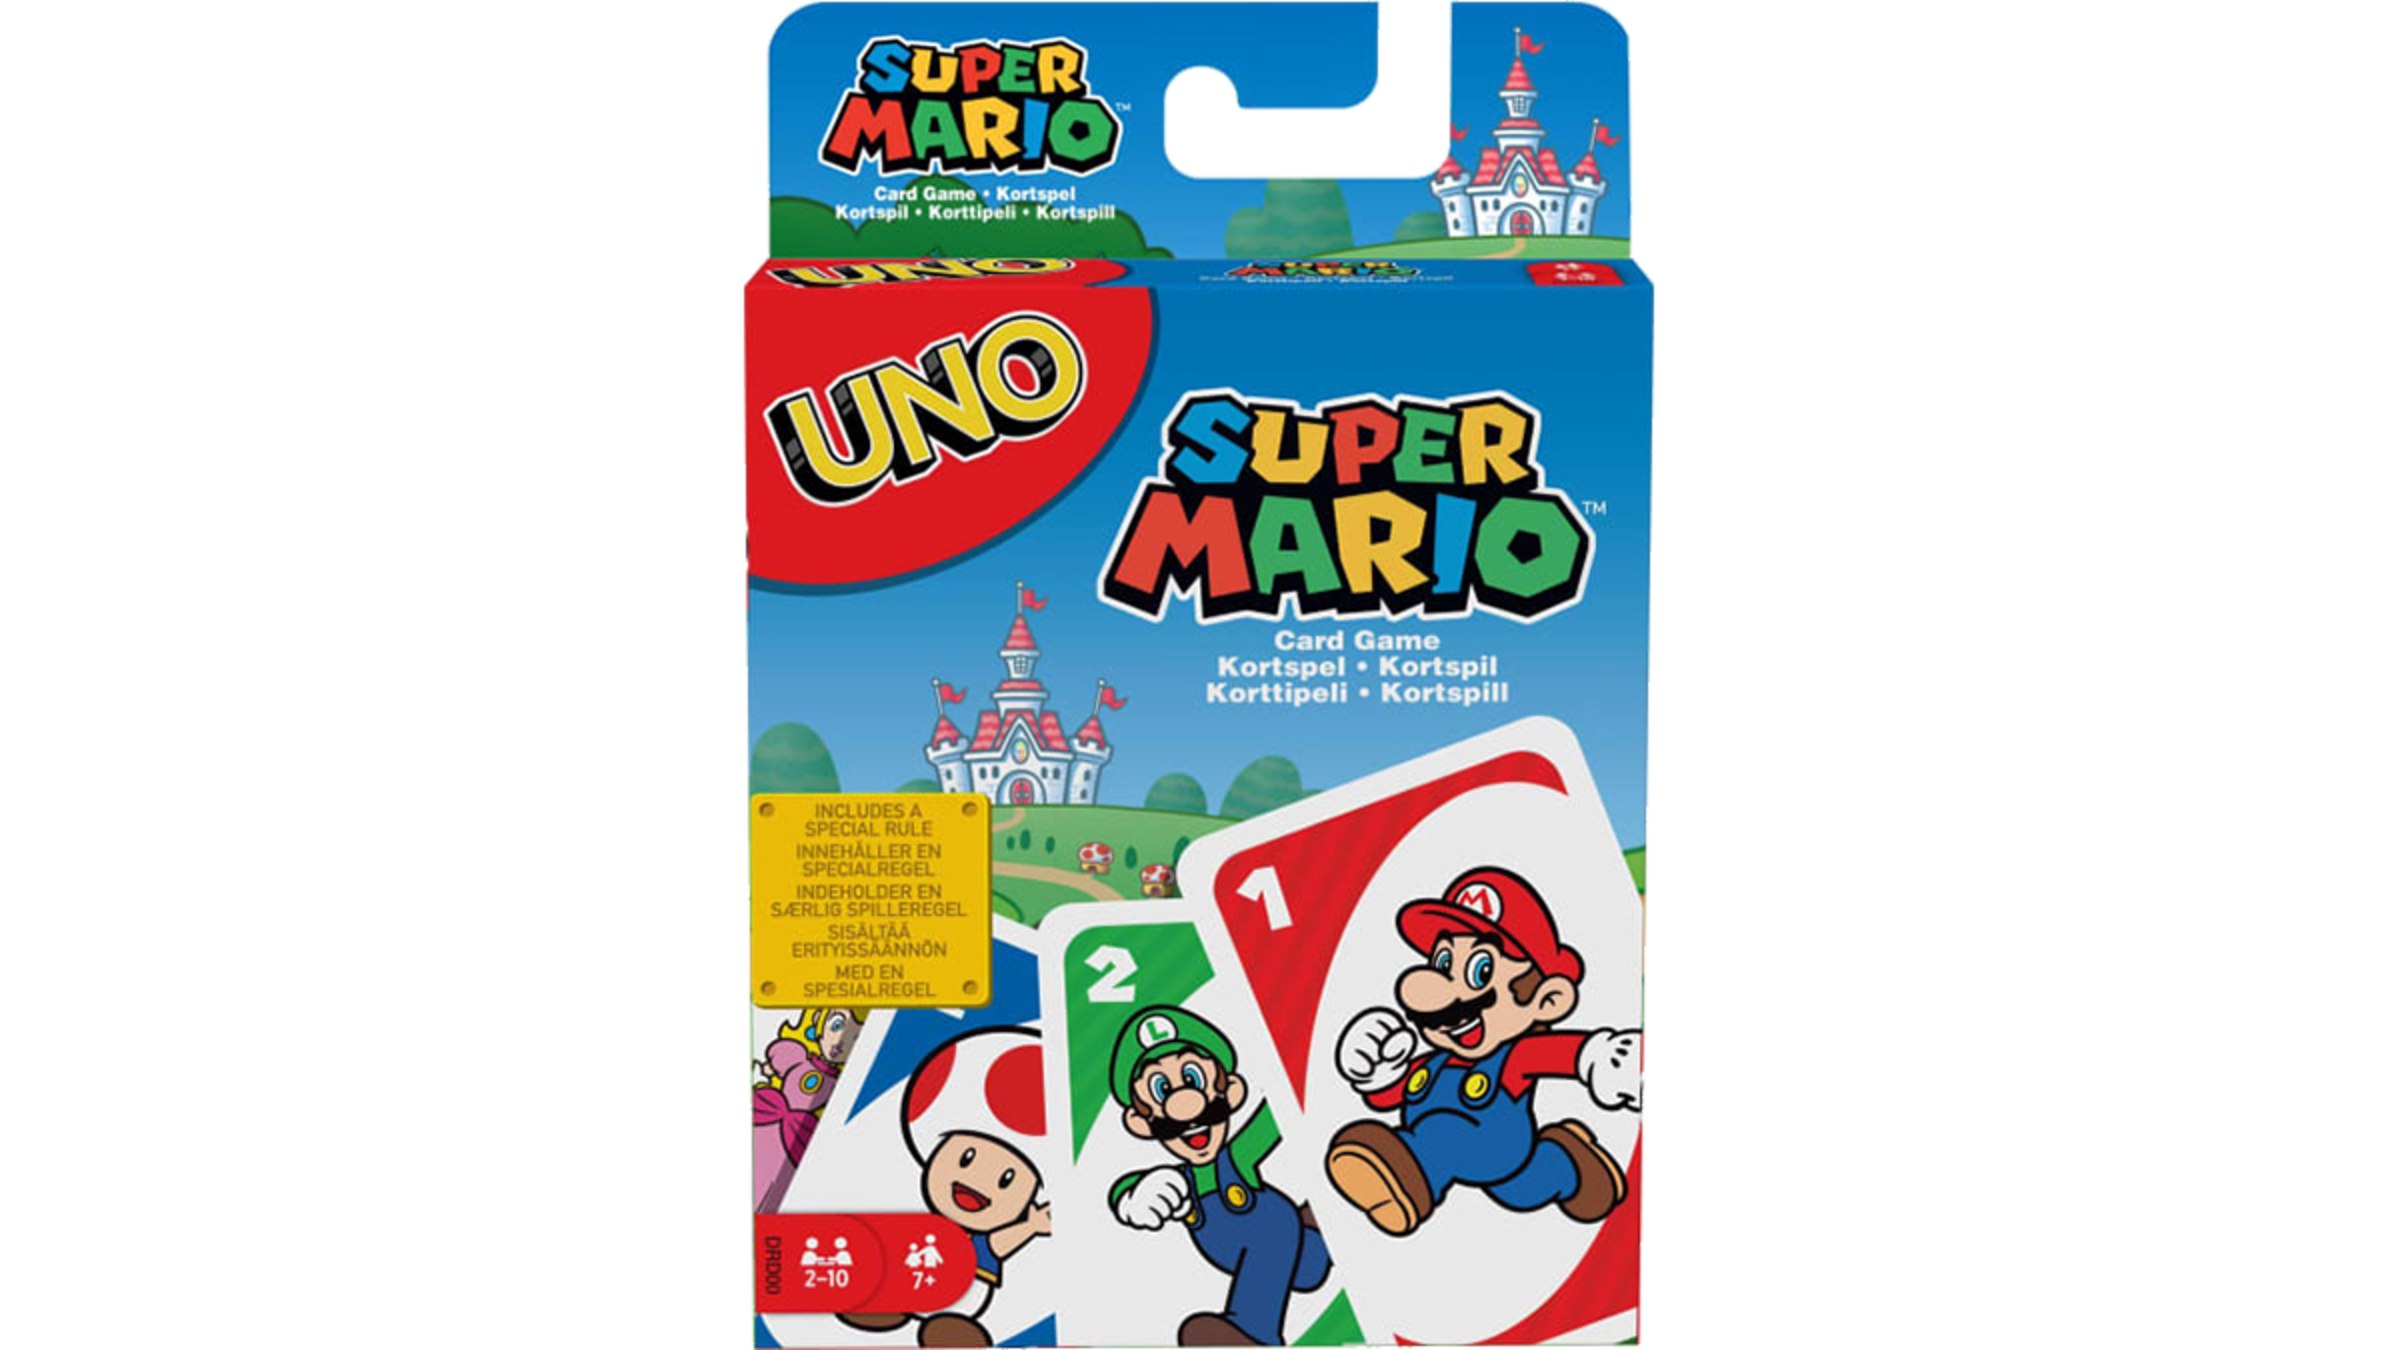 Juego de cartas Uno Super Mario Bros